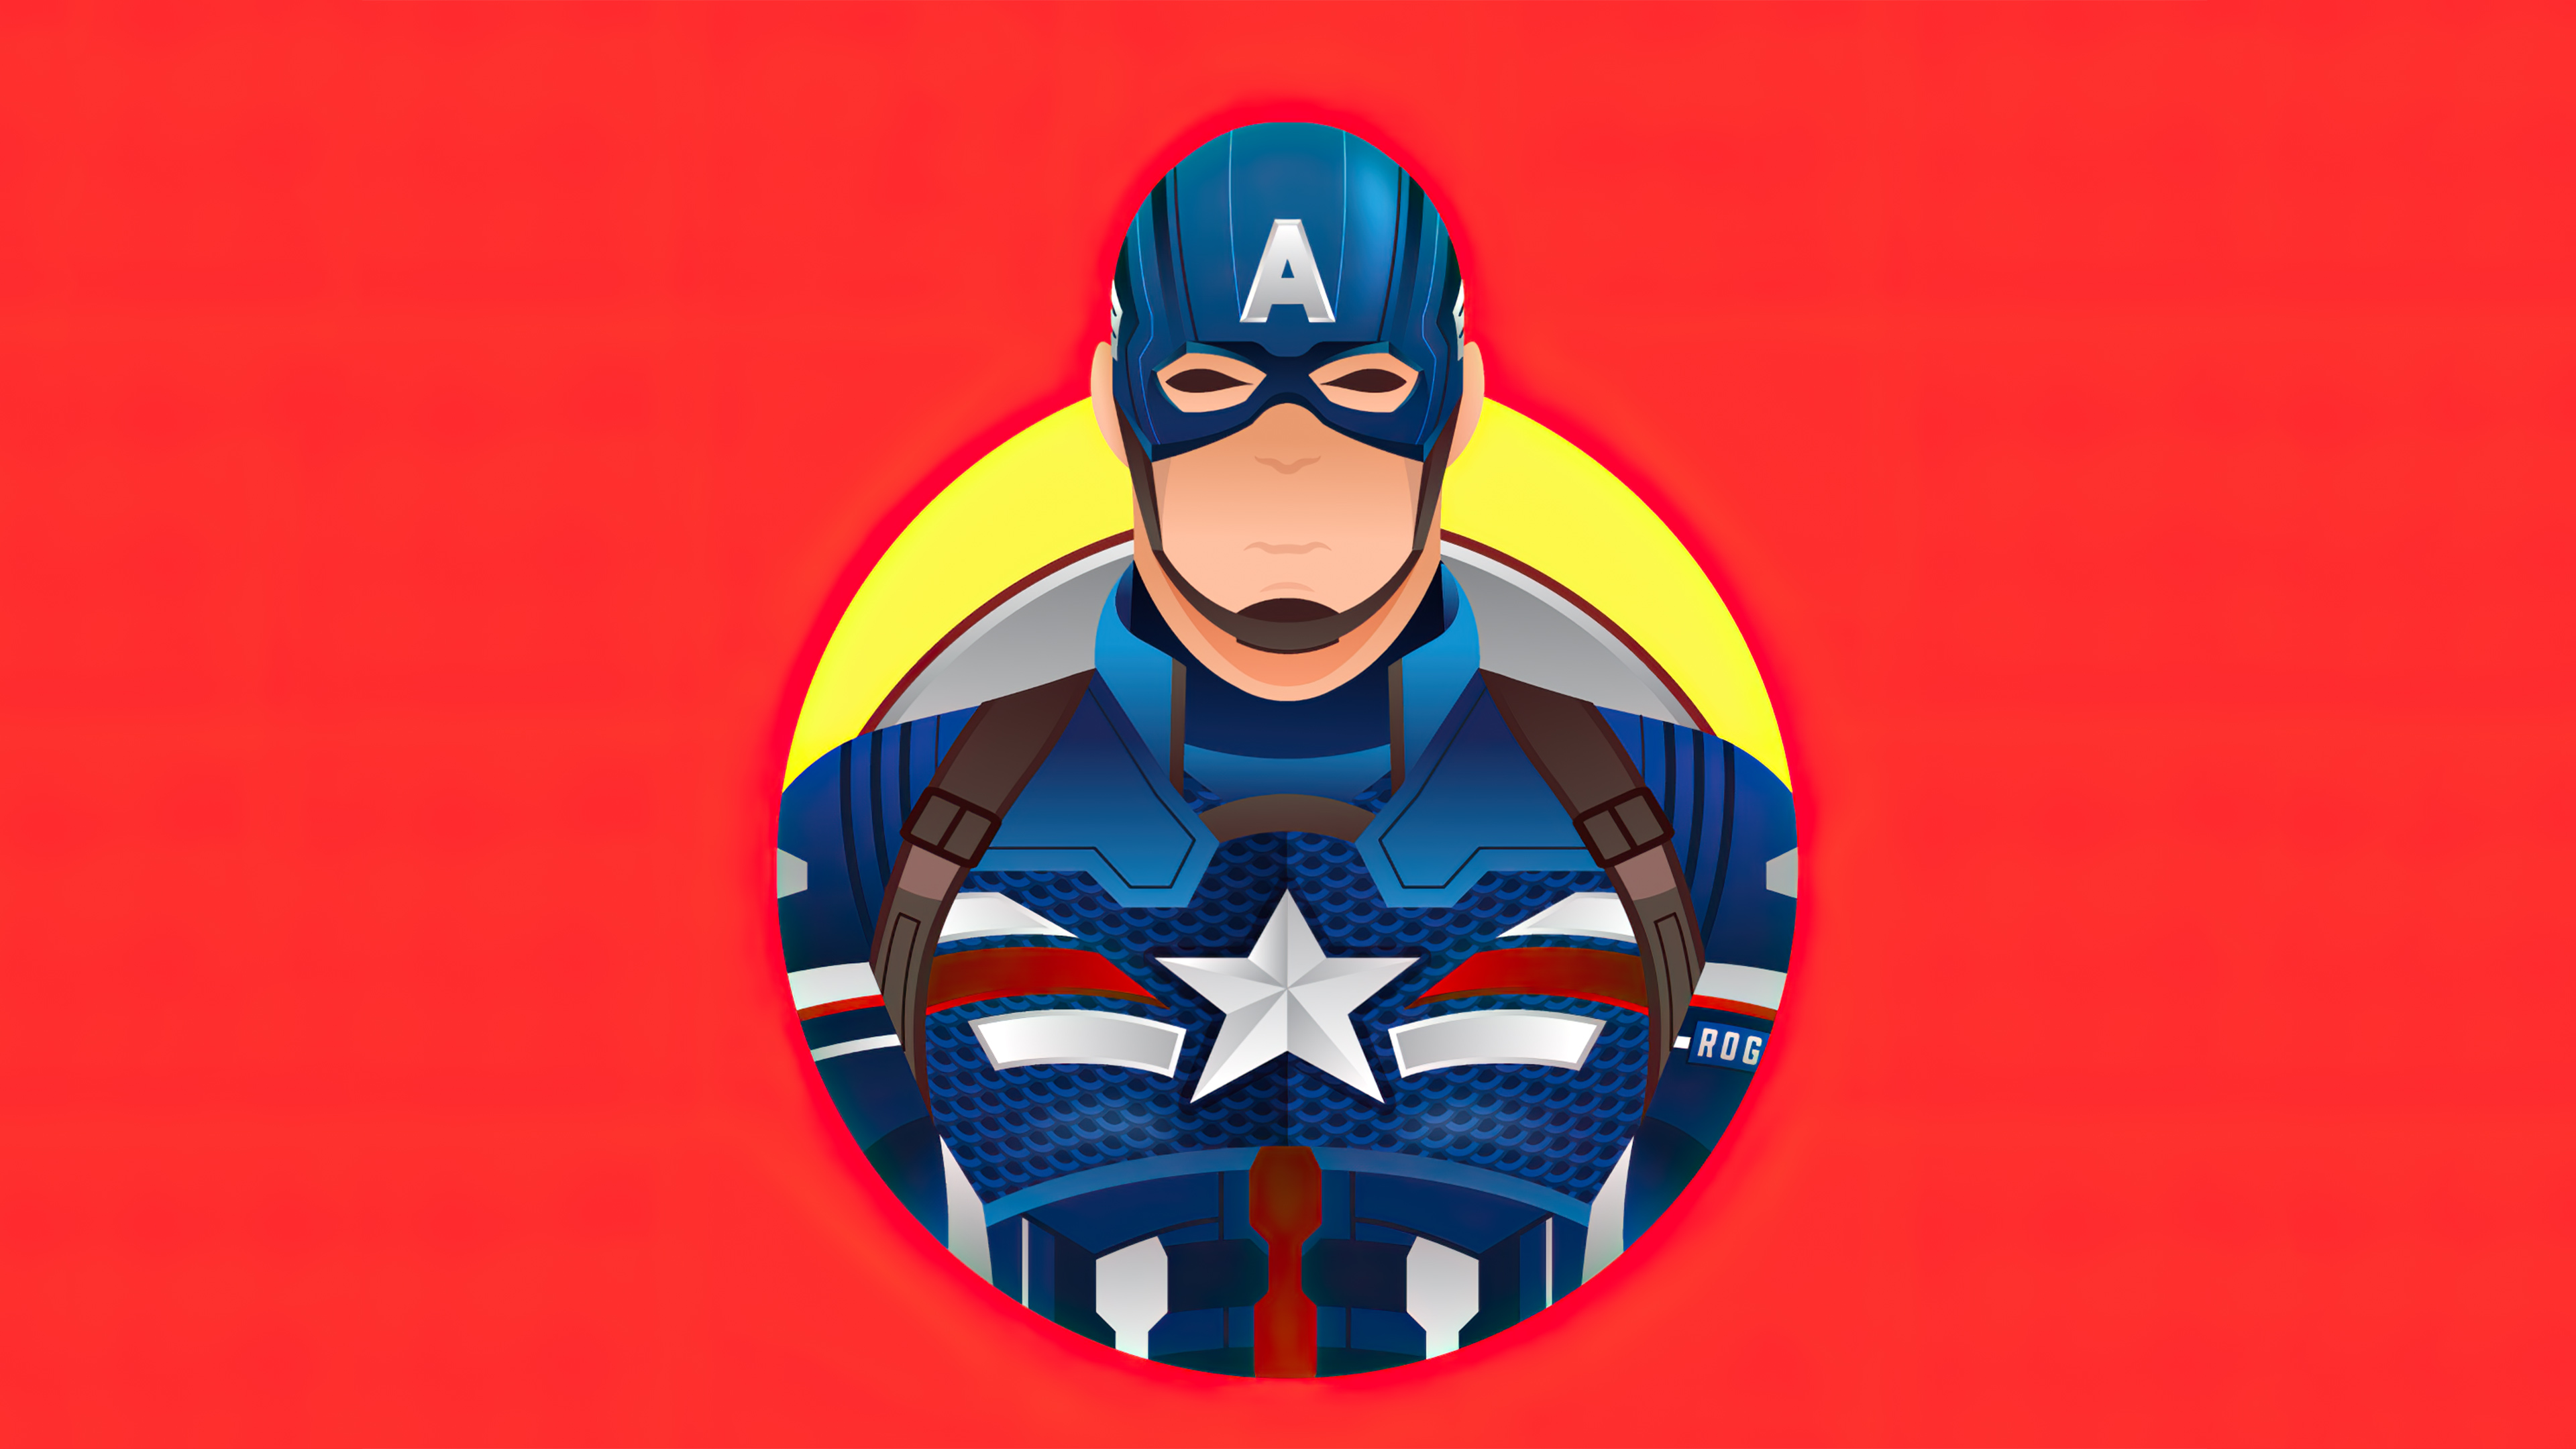 captain america minimalism 2020 1596915175 - Captain America Minimalism 2020 -